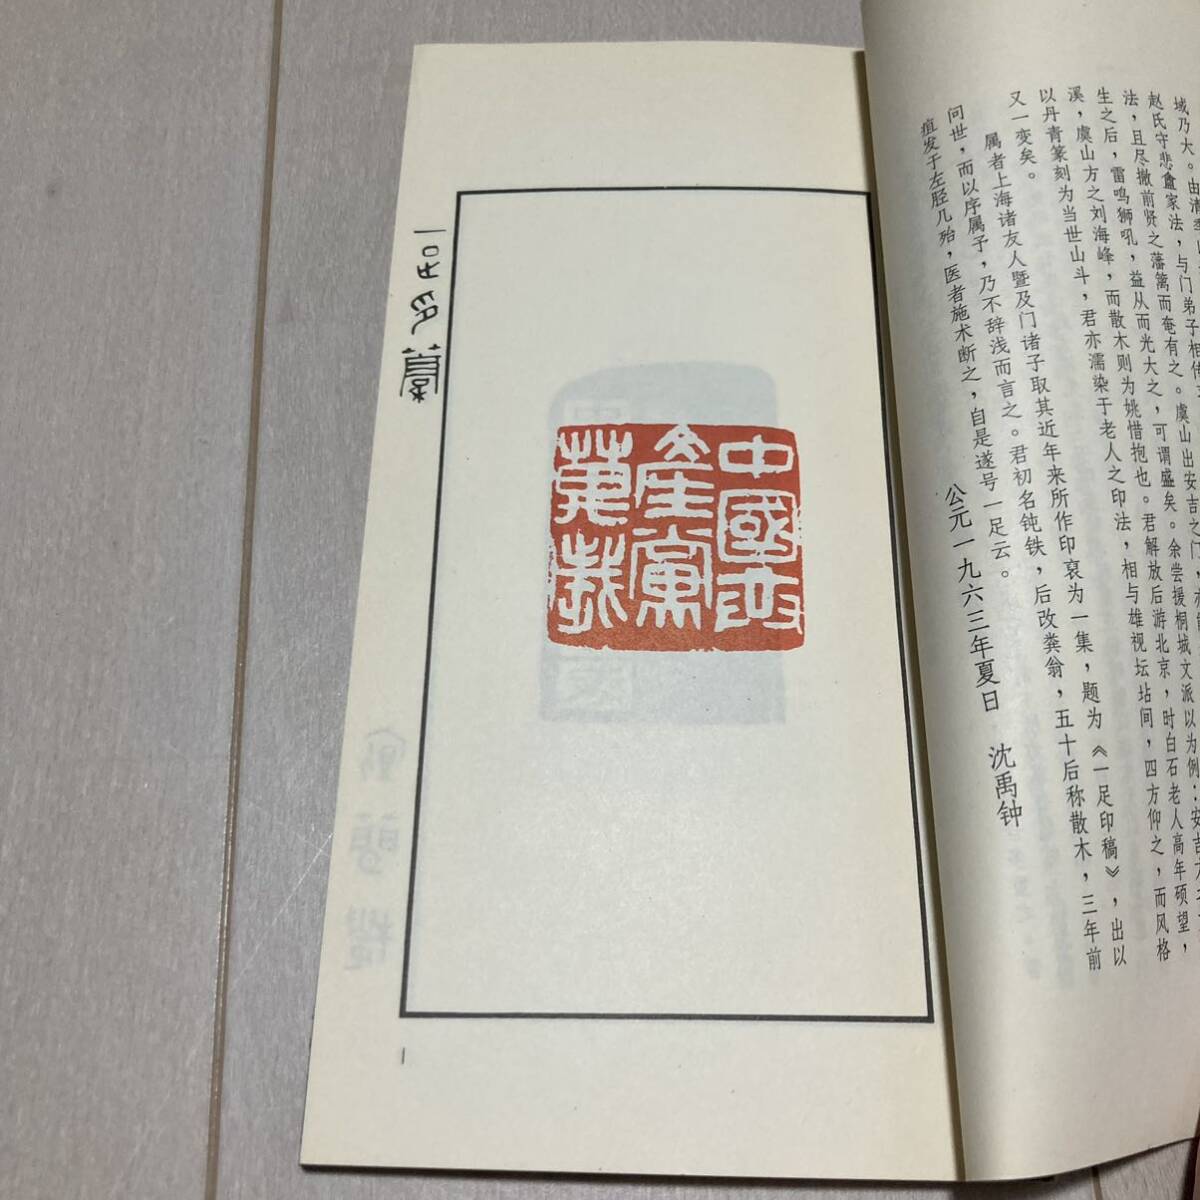 K 1988年発行 唐本 中国 書道 篆刻 印譜 「一足印稿」_画像2